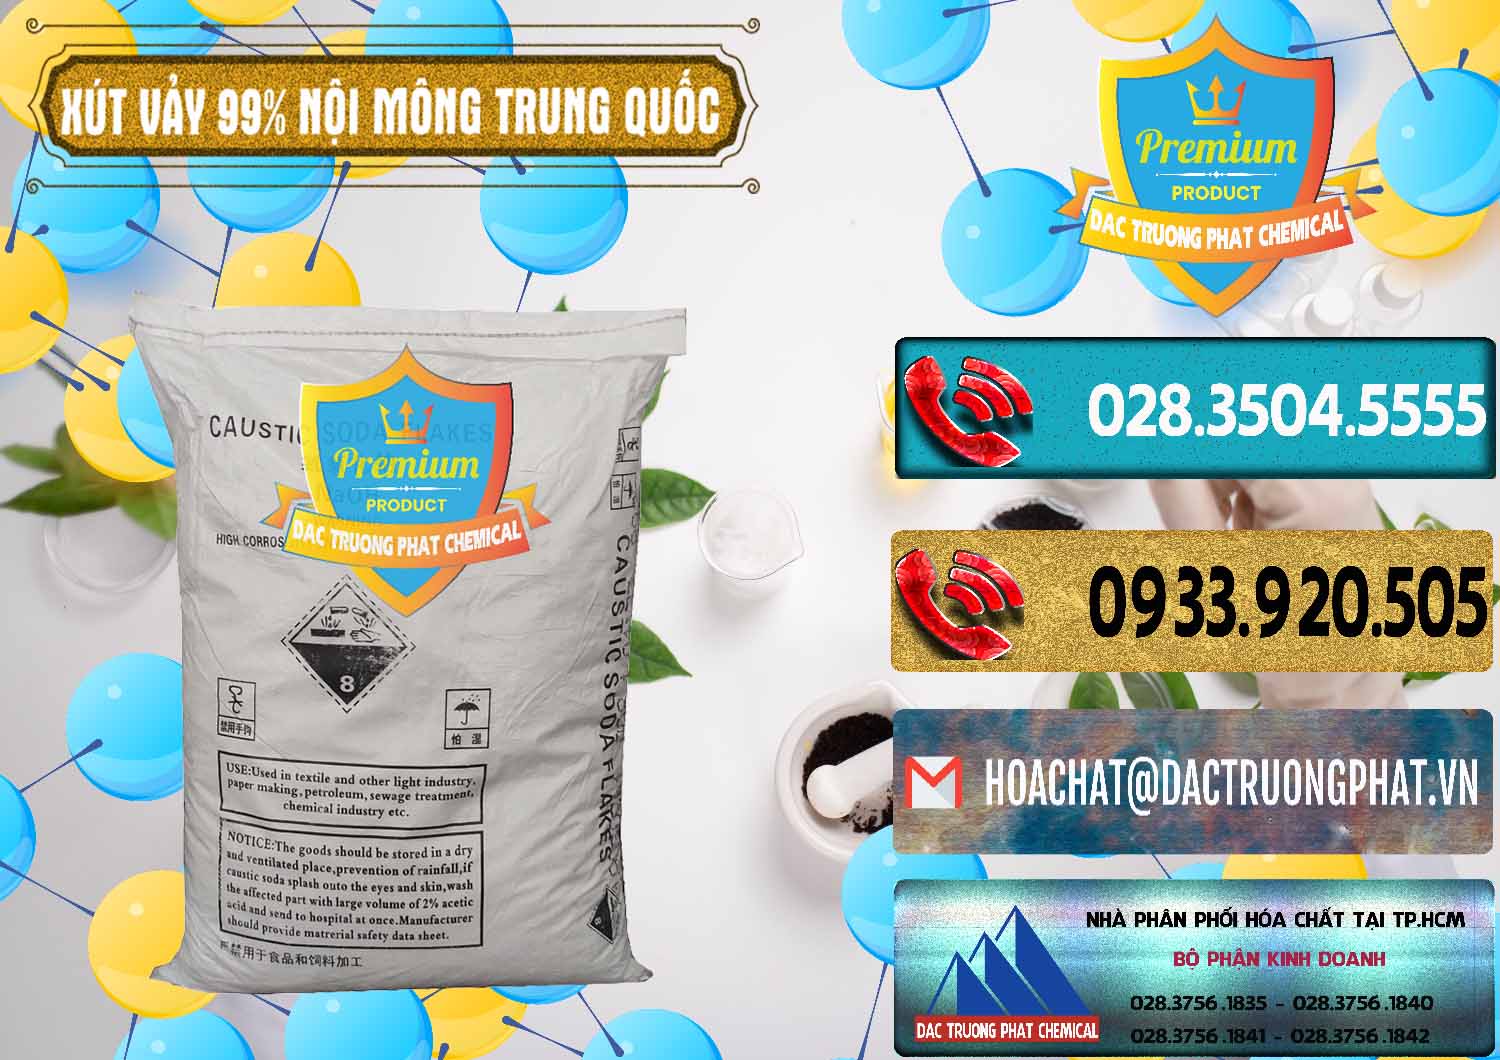 Cty bán ( cung cấp ) Xút Vảy - NaOH Vảy 99% Nội Mông Trung Quốc China - 0228 - Cty chuyên nhập khẩu - phân phối hóa chất tại TP.HCM - hoachatdetnhuom.com